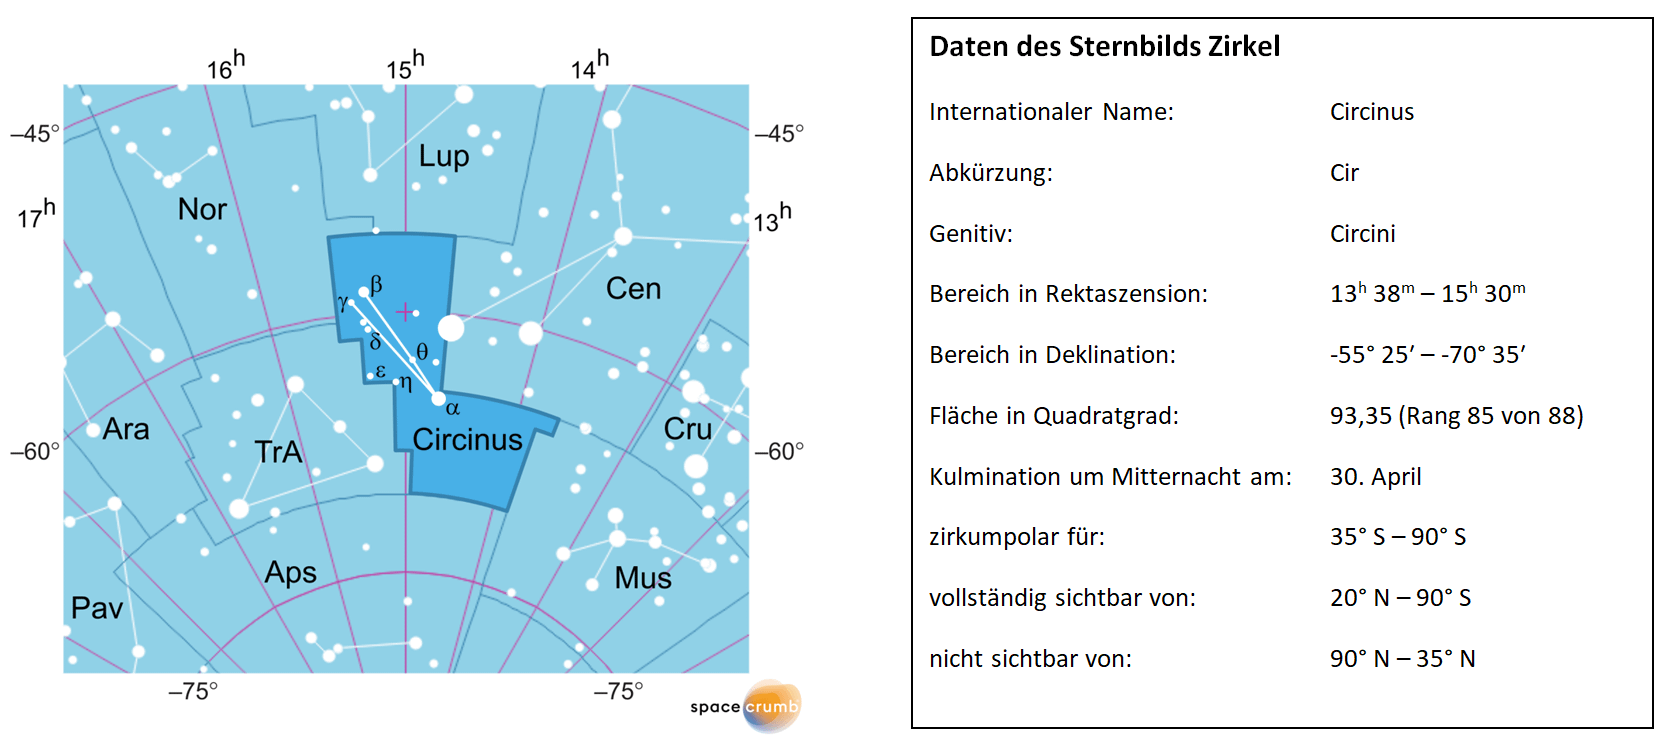 Links zeigt eine mit Koordinaten versehene Karte eines Himmelsausschnitts weiße Sterne auf hellblauem Hintergrund. Die Fläche, die das Sternbild Zirkel einnimmt, ist dunkelblau hervorgehoben. Eine Tabelle rechts gibt wichtige Daten des Sternbilds Zirkel an.